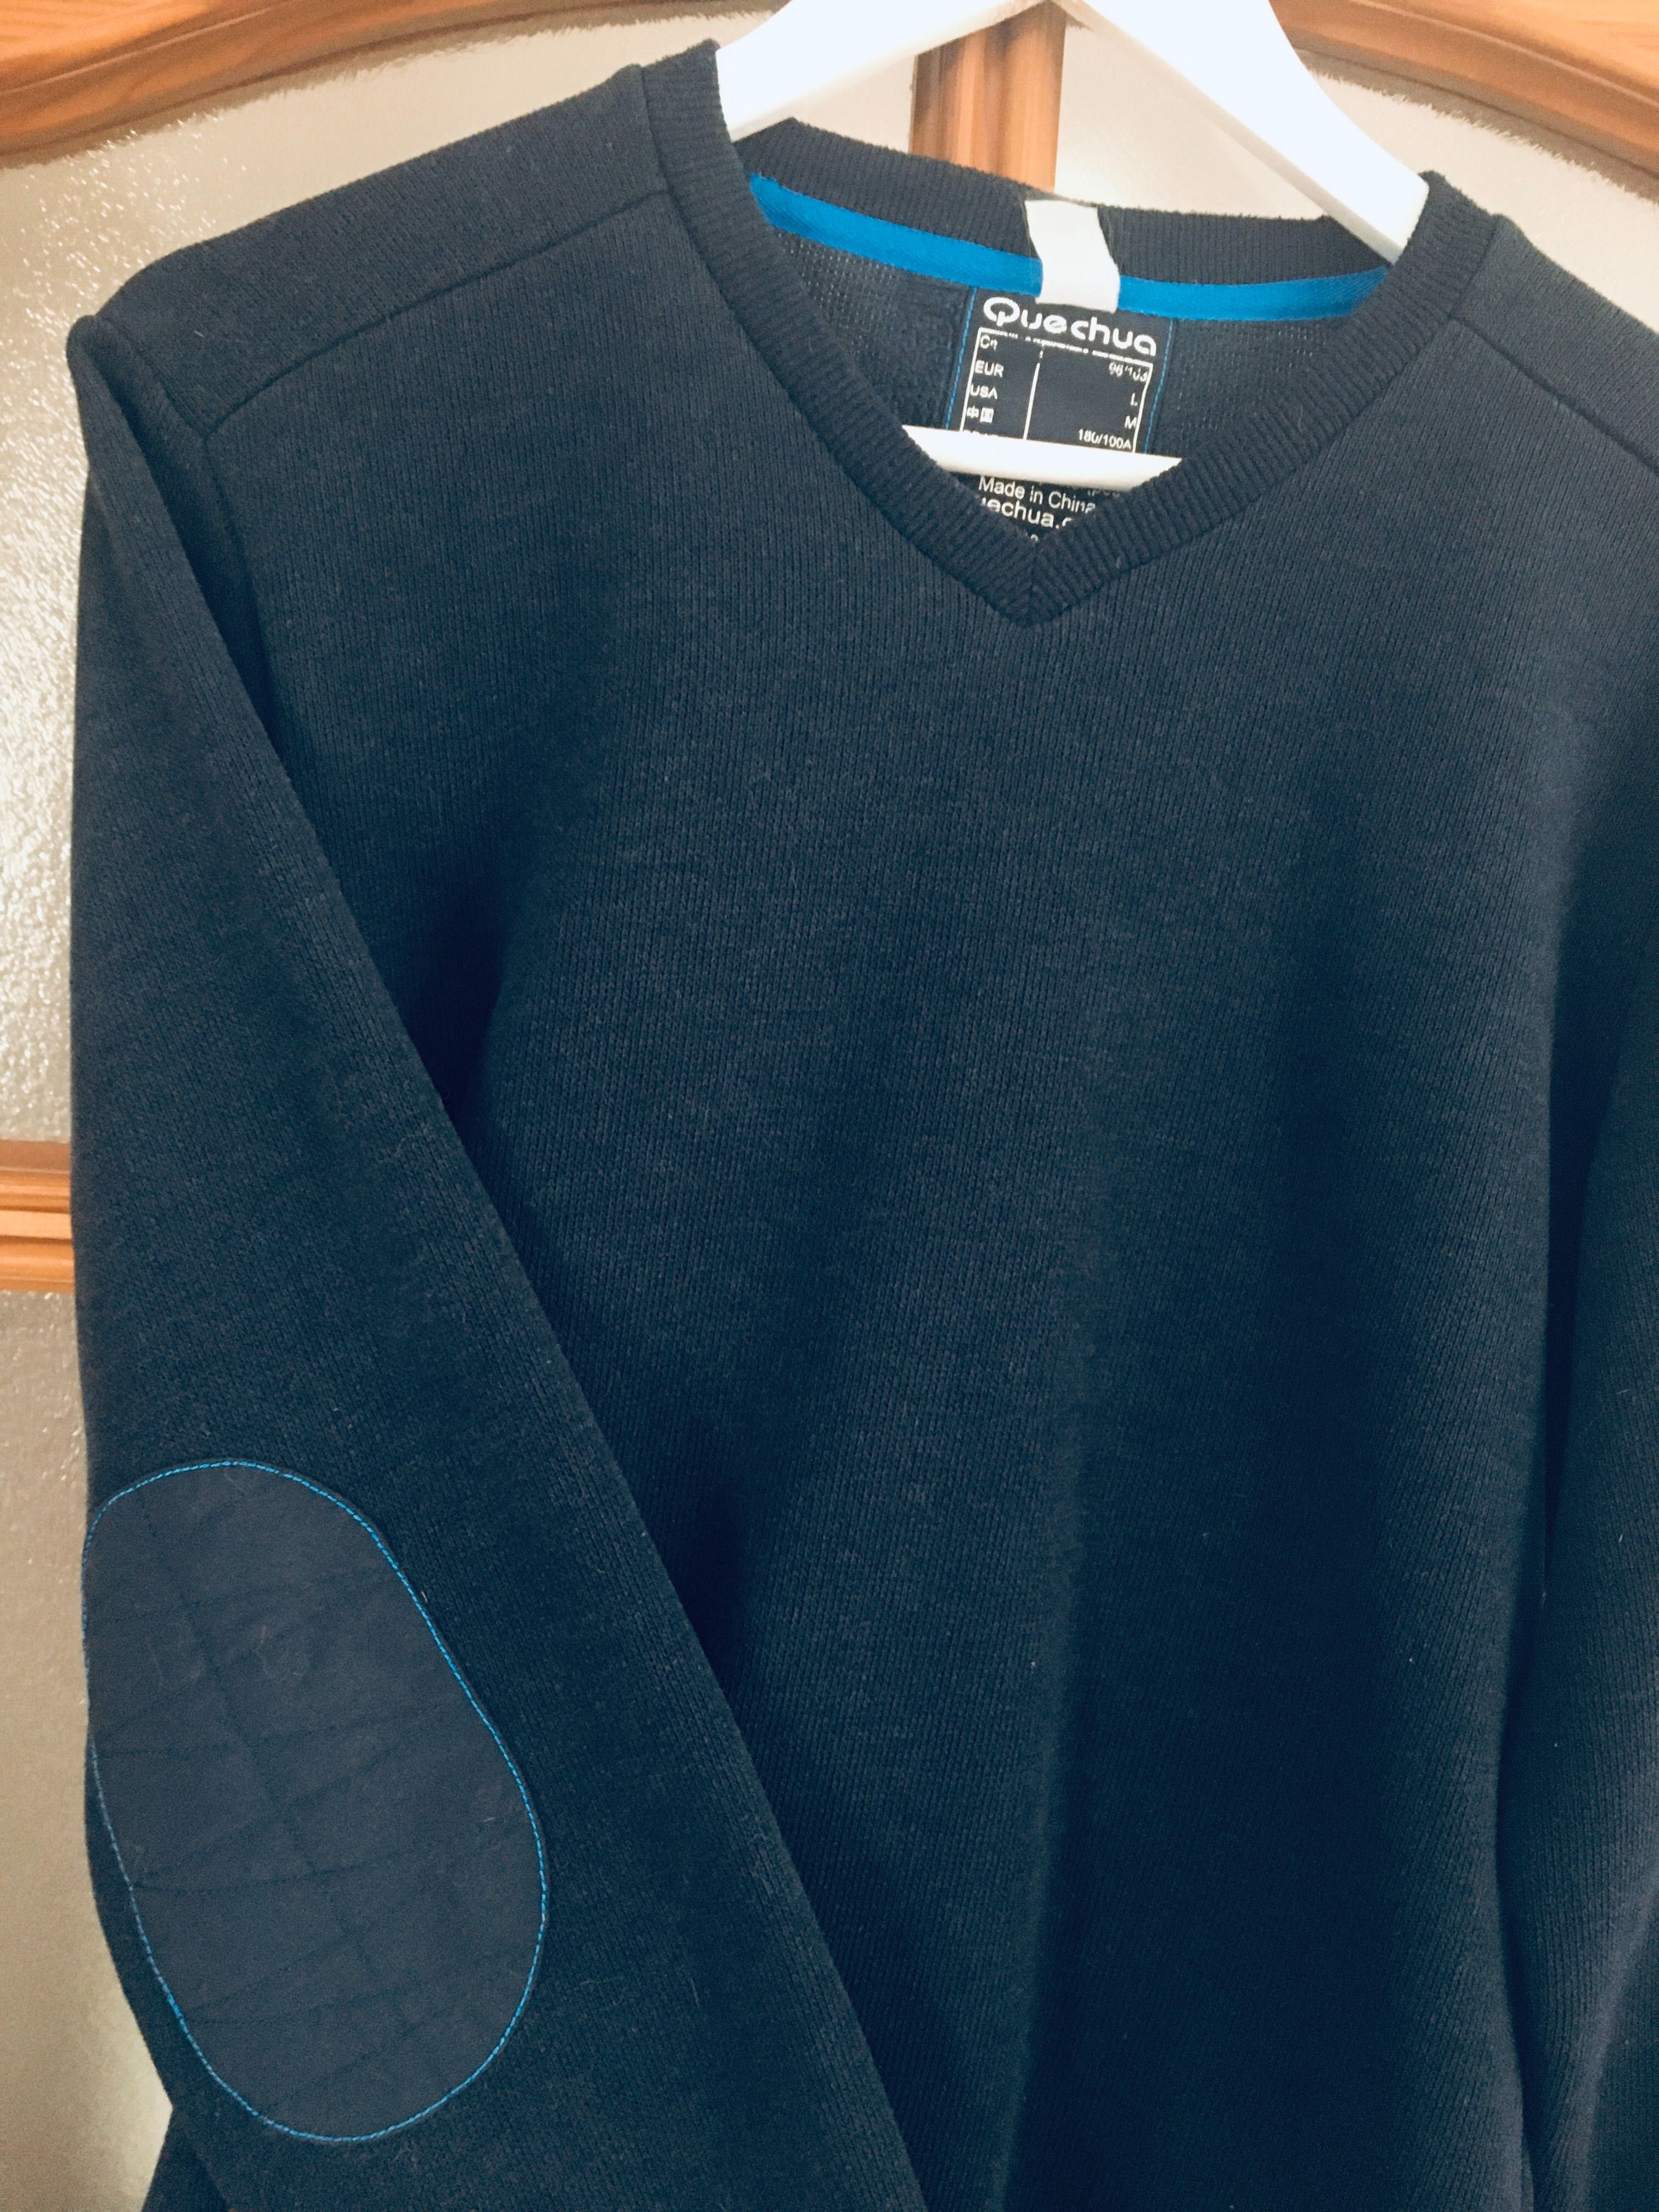 Quechua - polarowa bluza, granatowa, zakupiona w Decathlon, R L